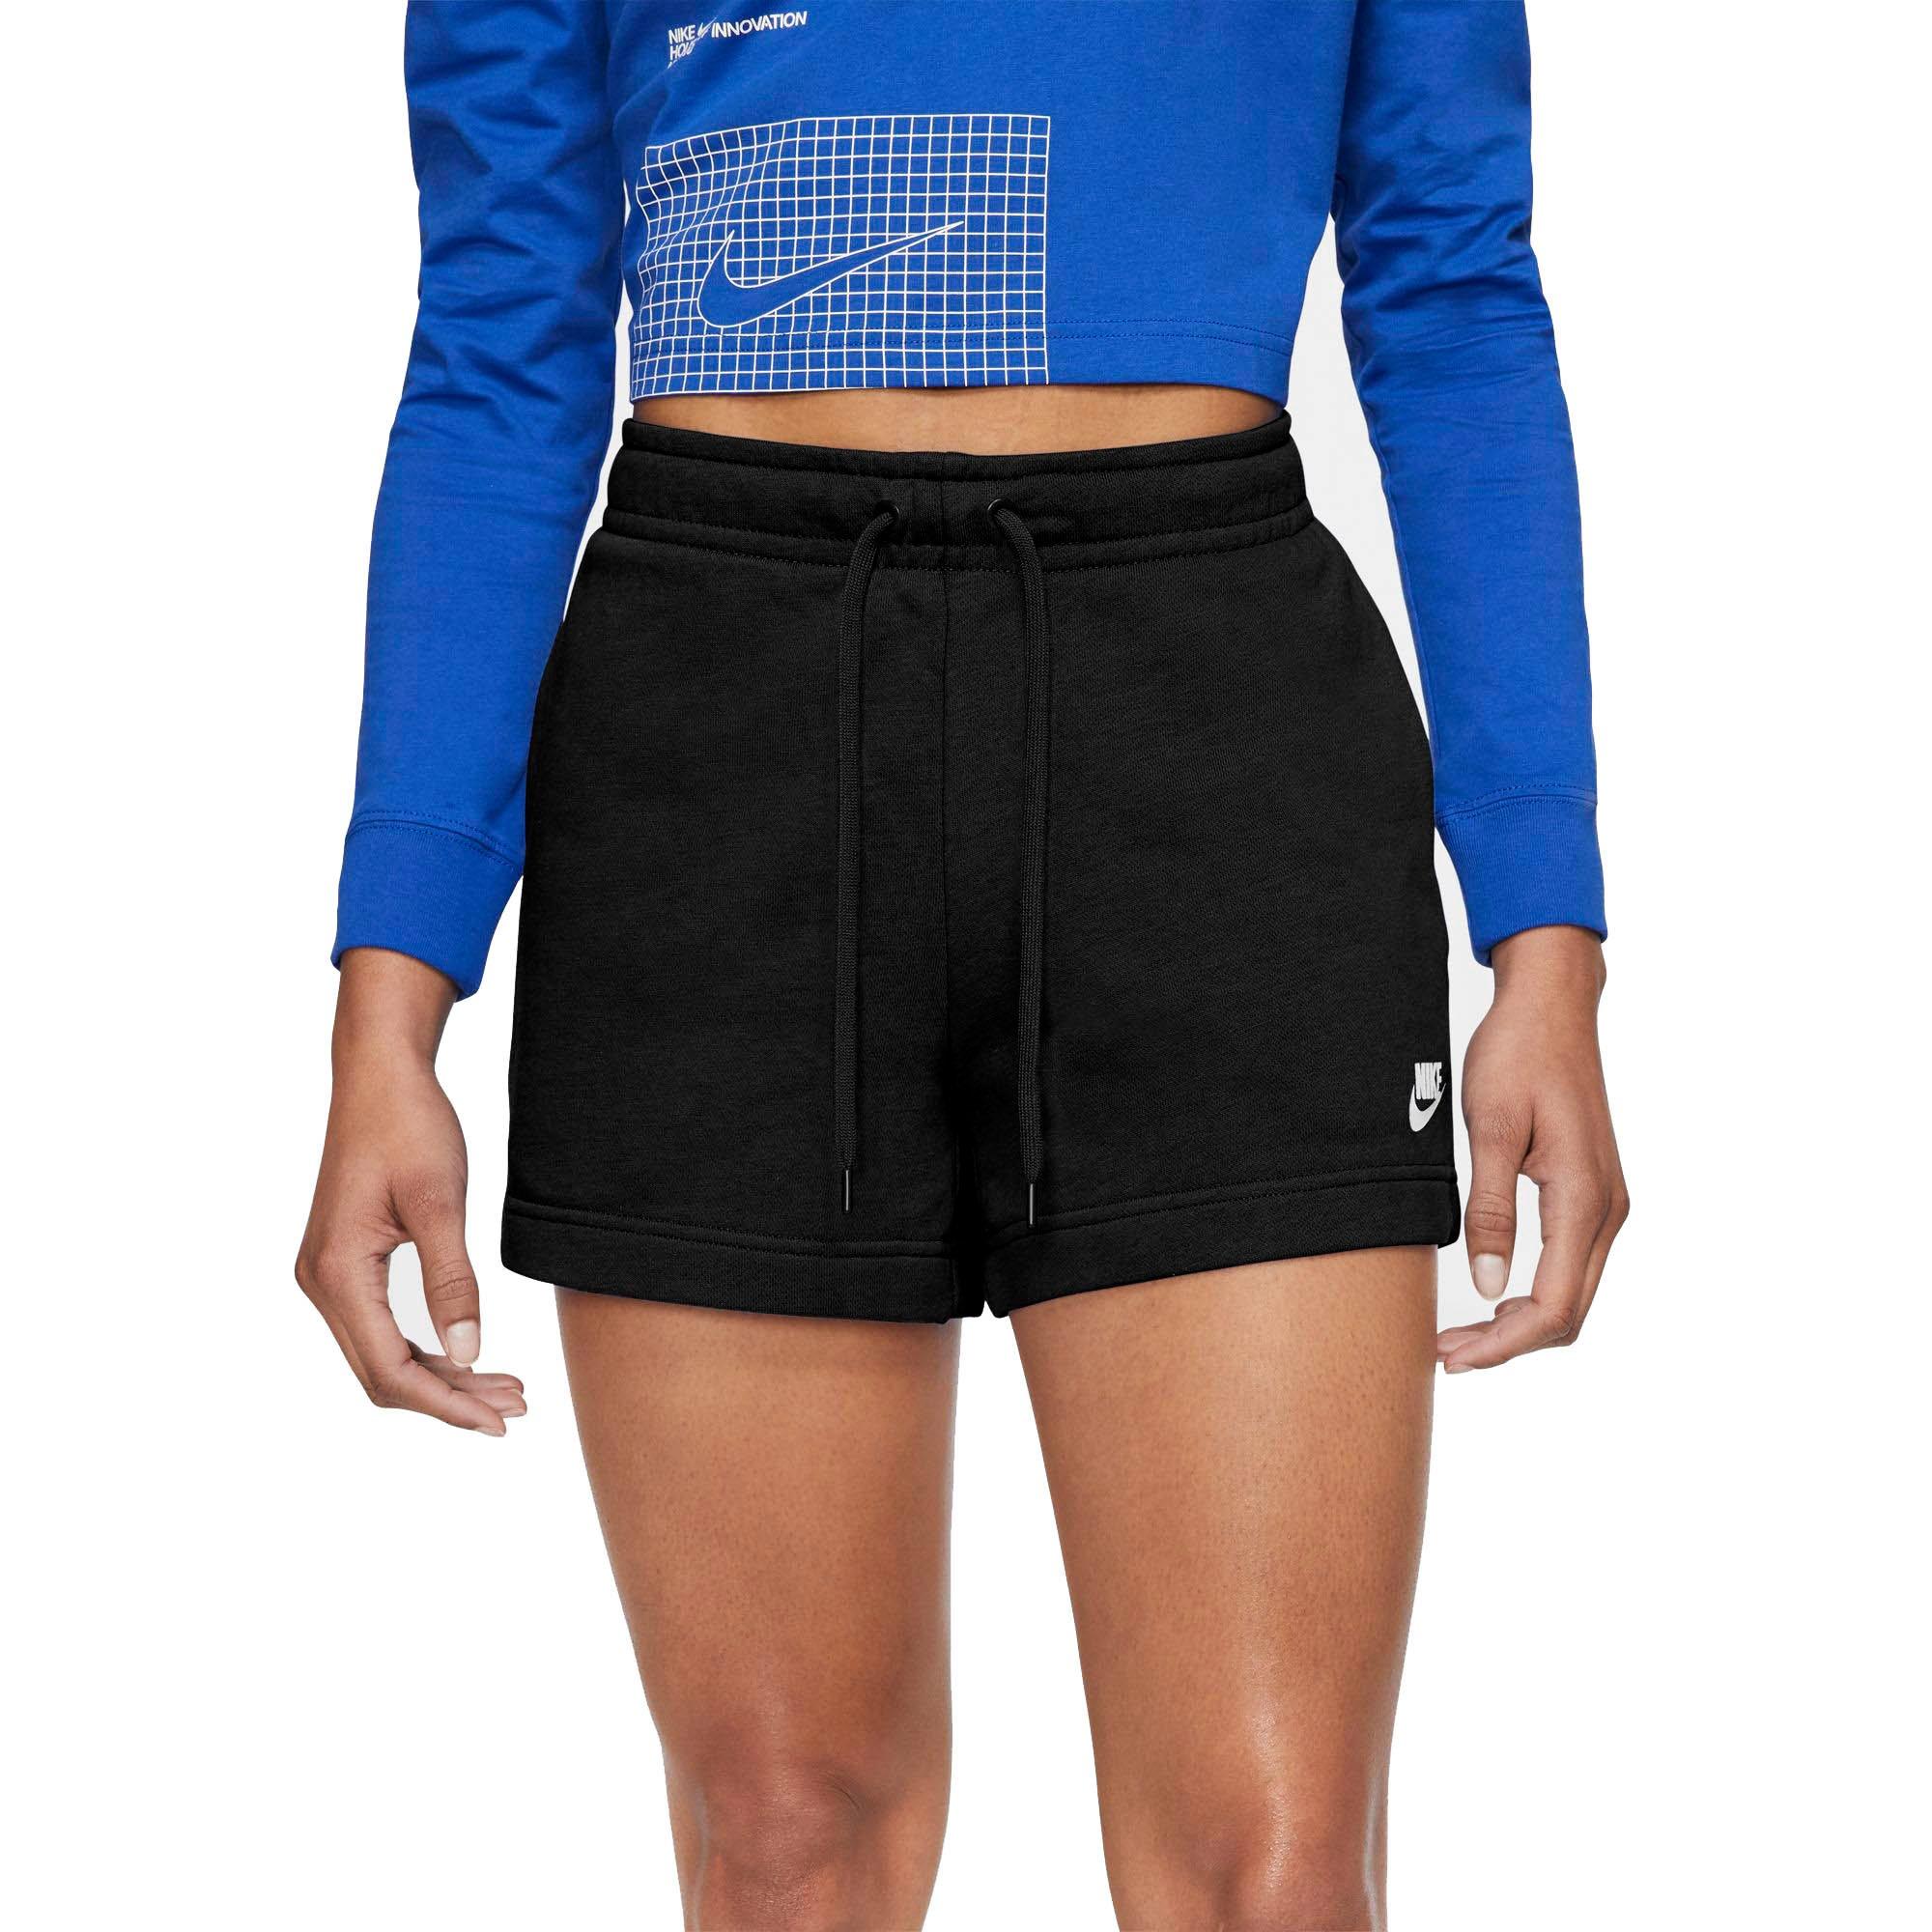 nike sportswear club fleece shorts women